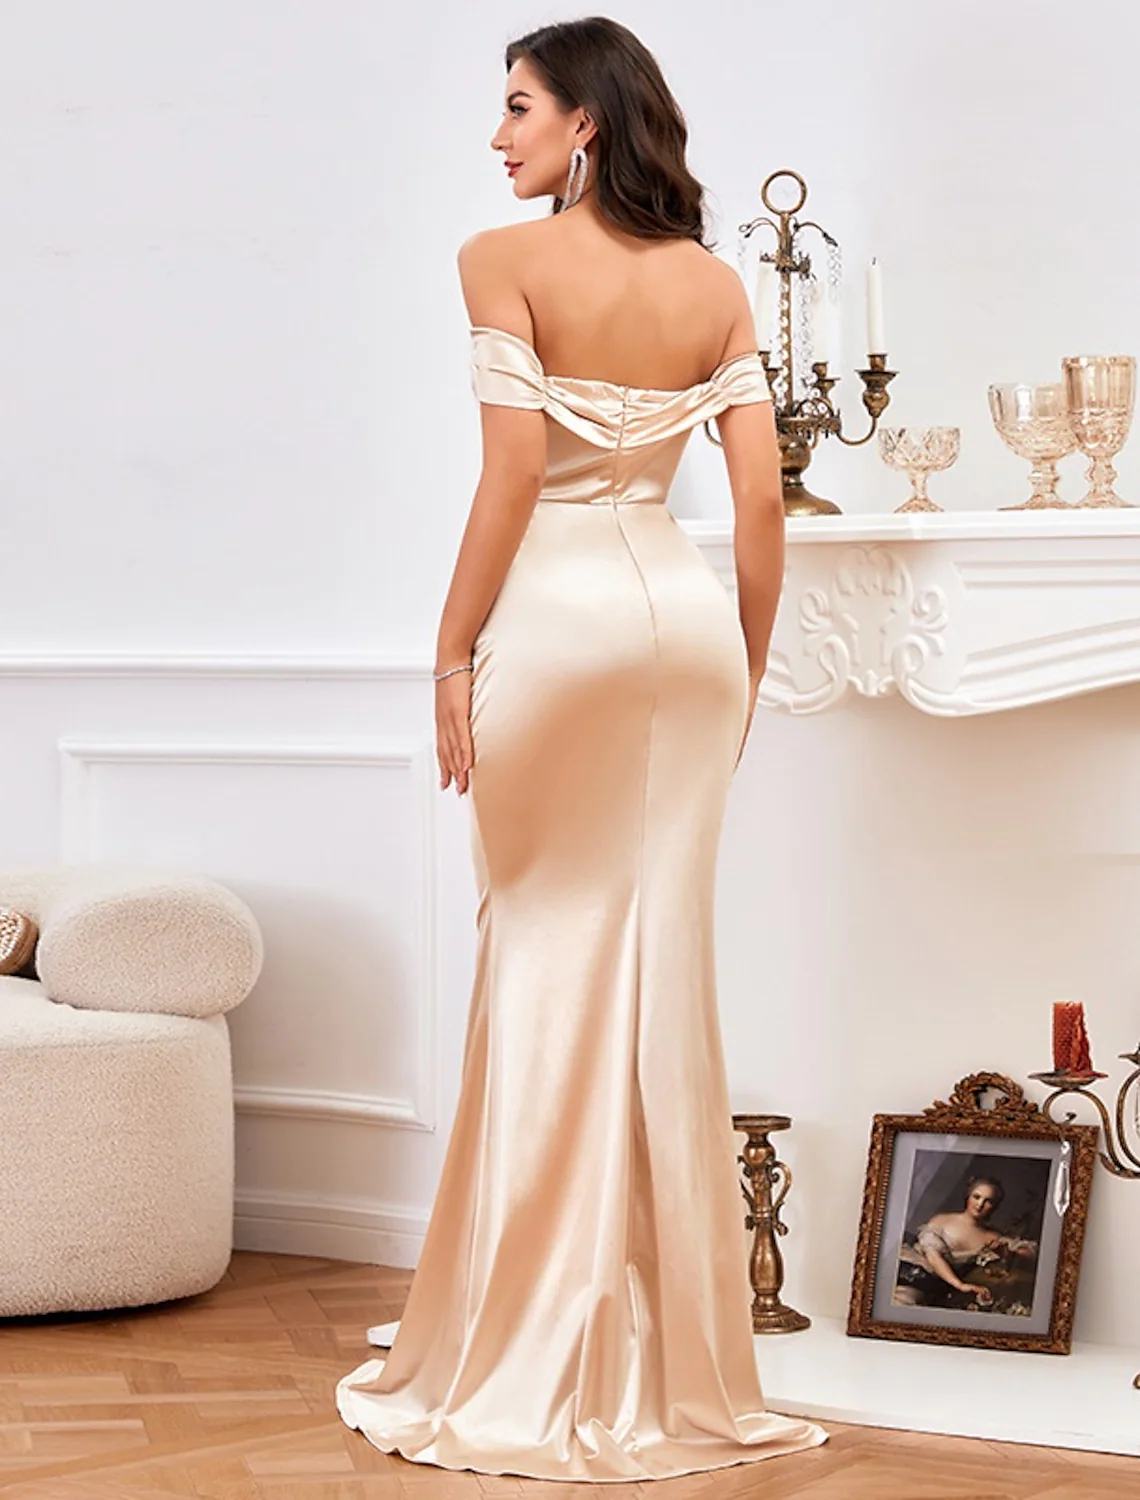 High Split Prom Formal Evening Dress Off Shoulder Sleeveless Floor Length Satin with Ruched Slit